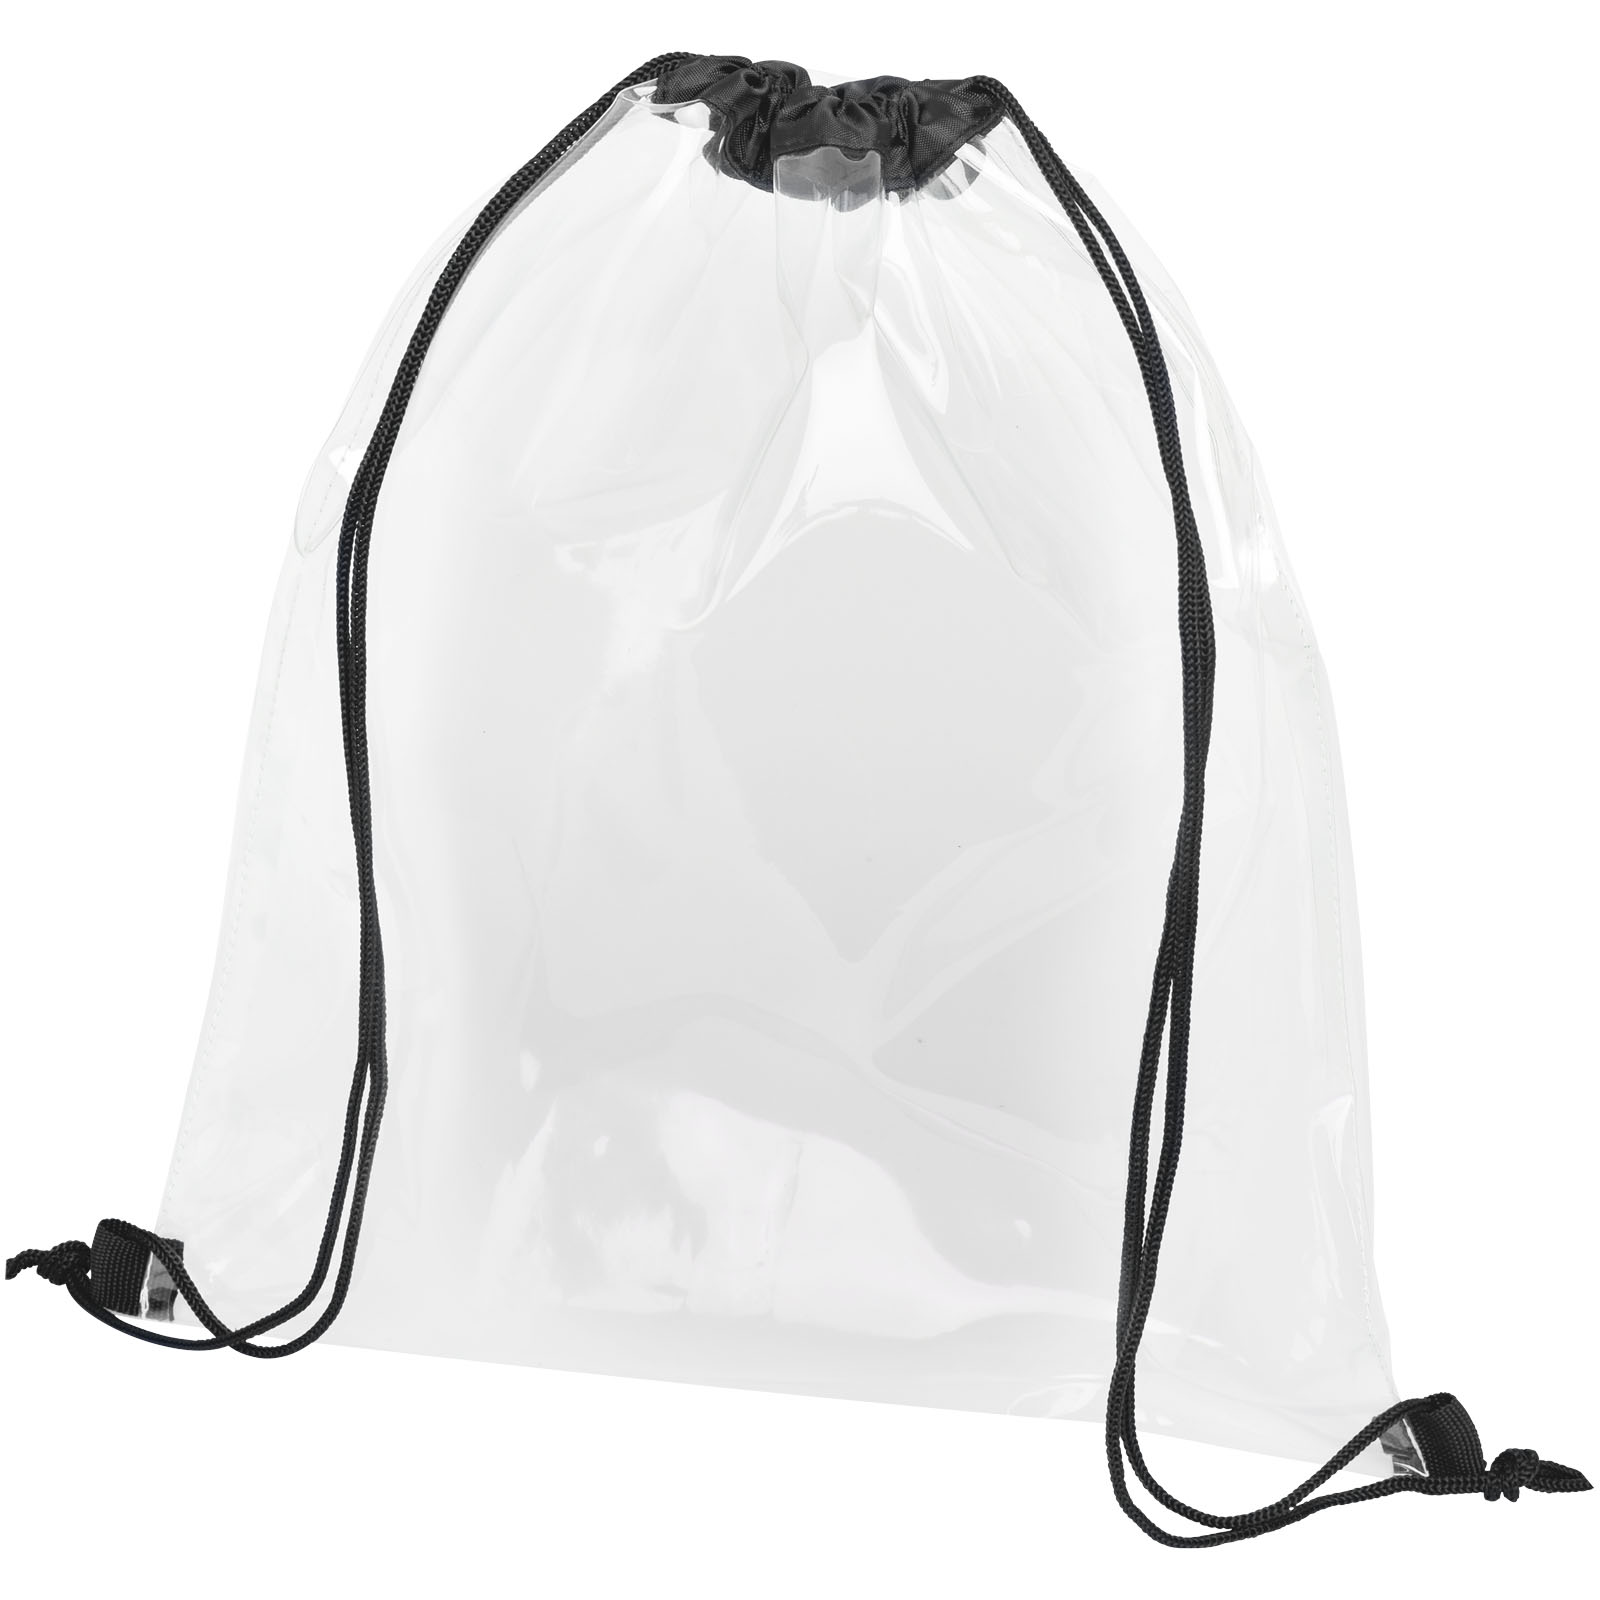 Bags - Lancaster transparent drawstring backpack 5L